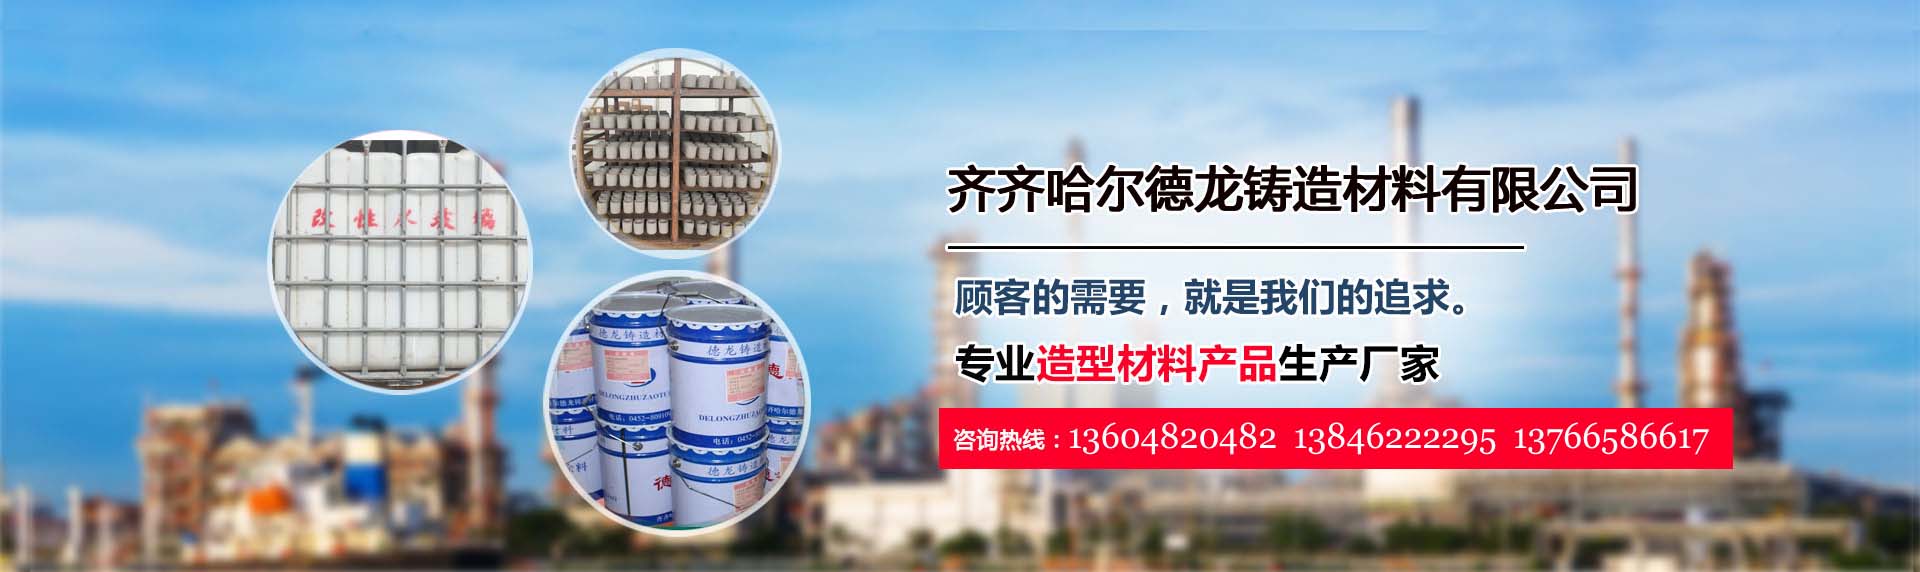 关于当前产品3199ceo彩集团·(中国)官方网站的成功案例等相关图片